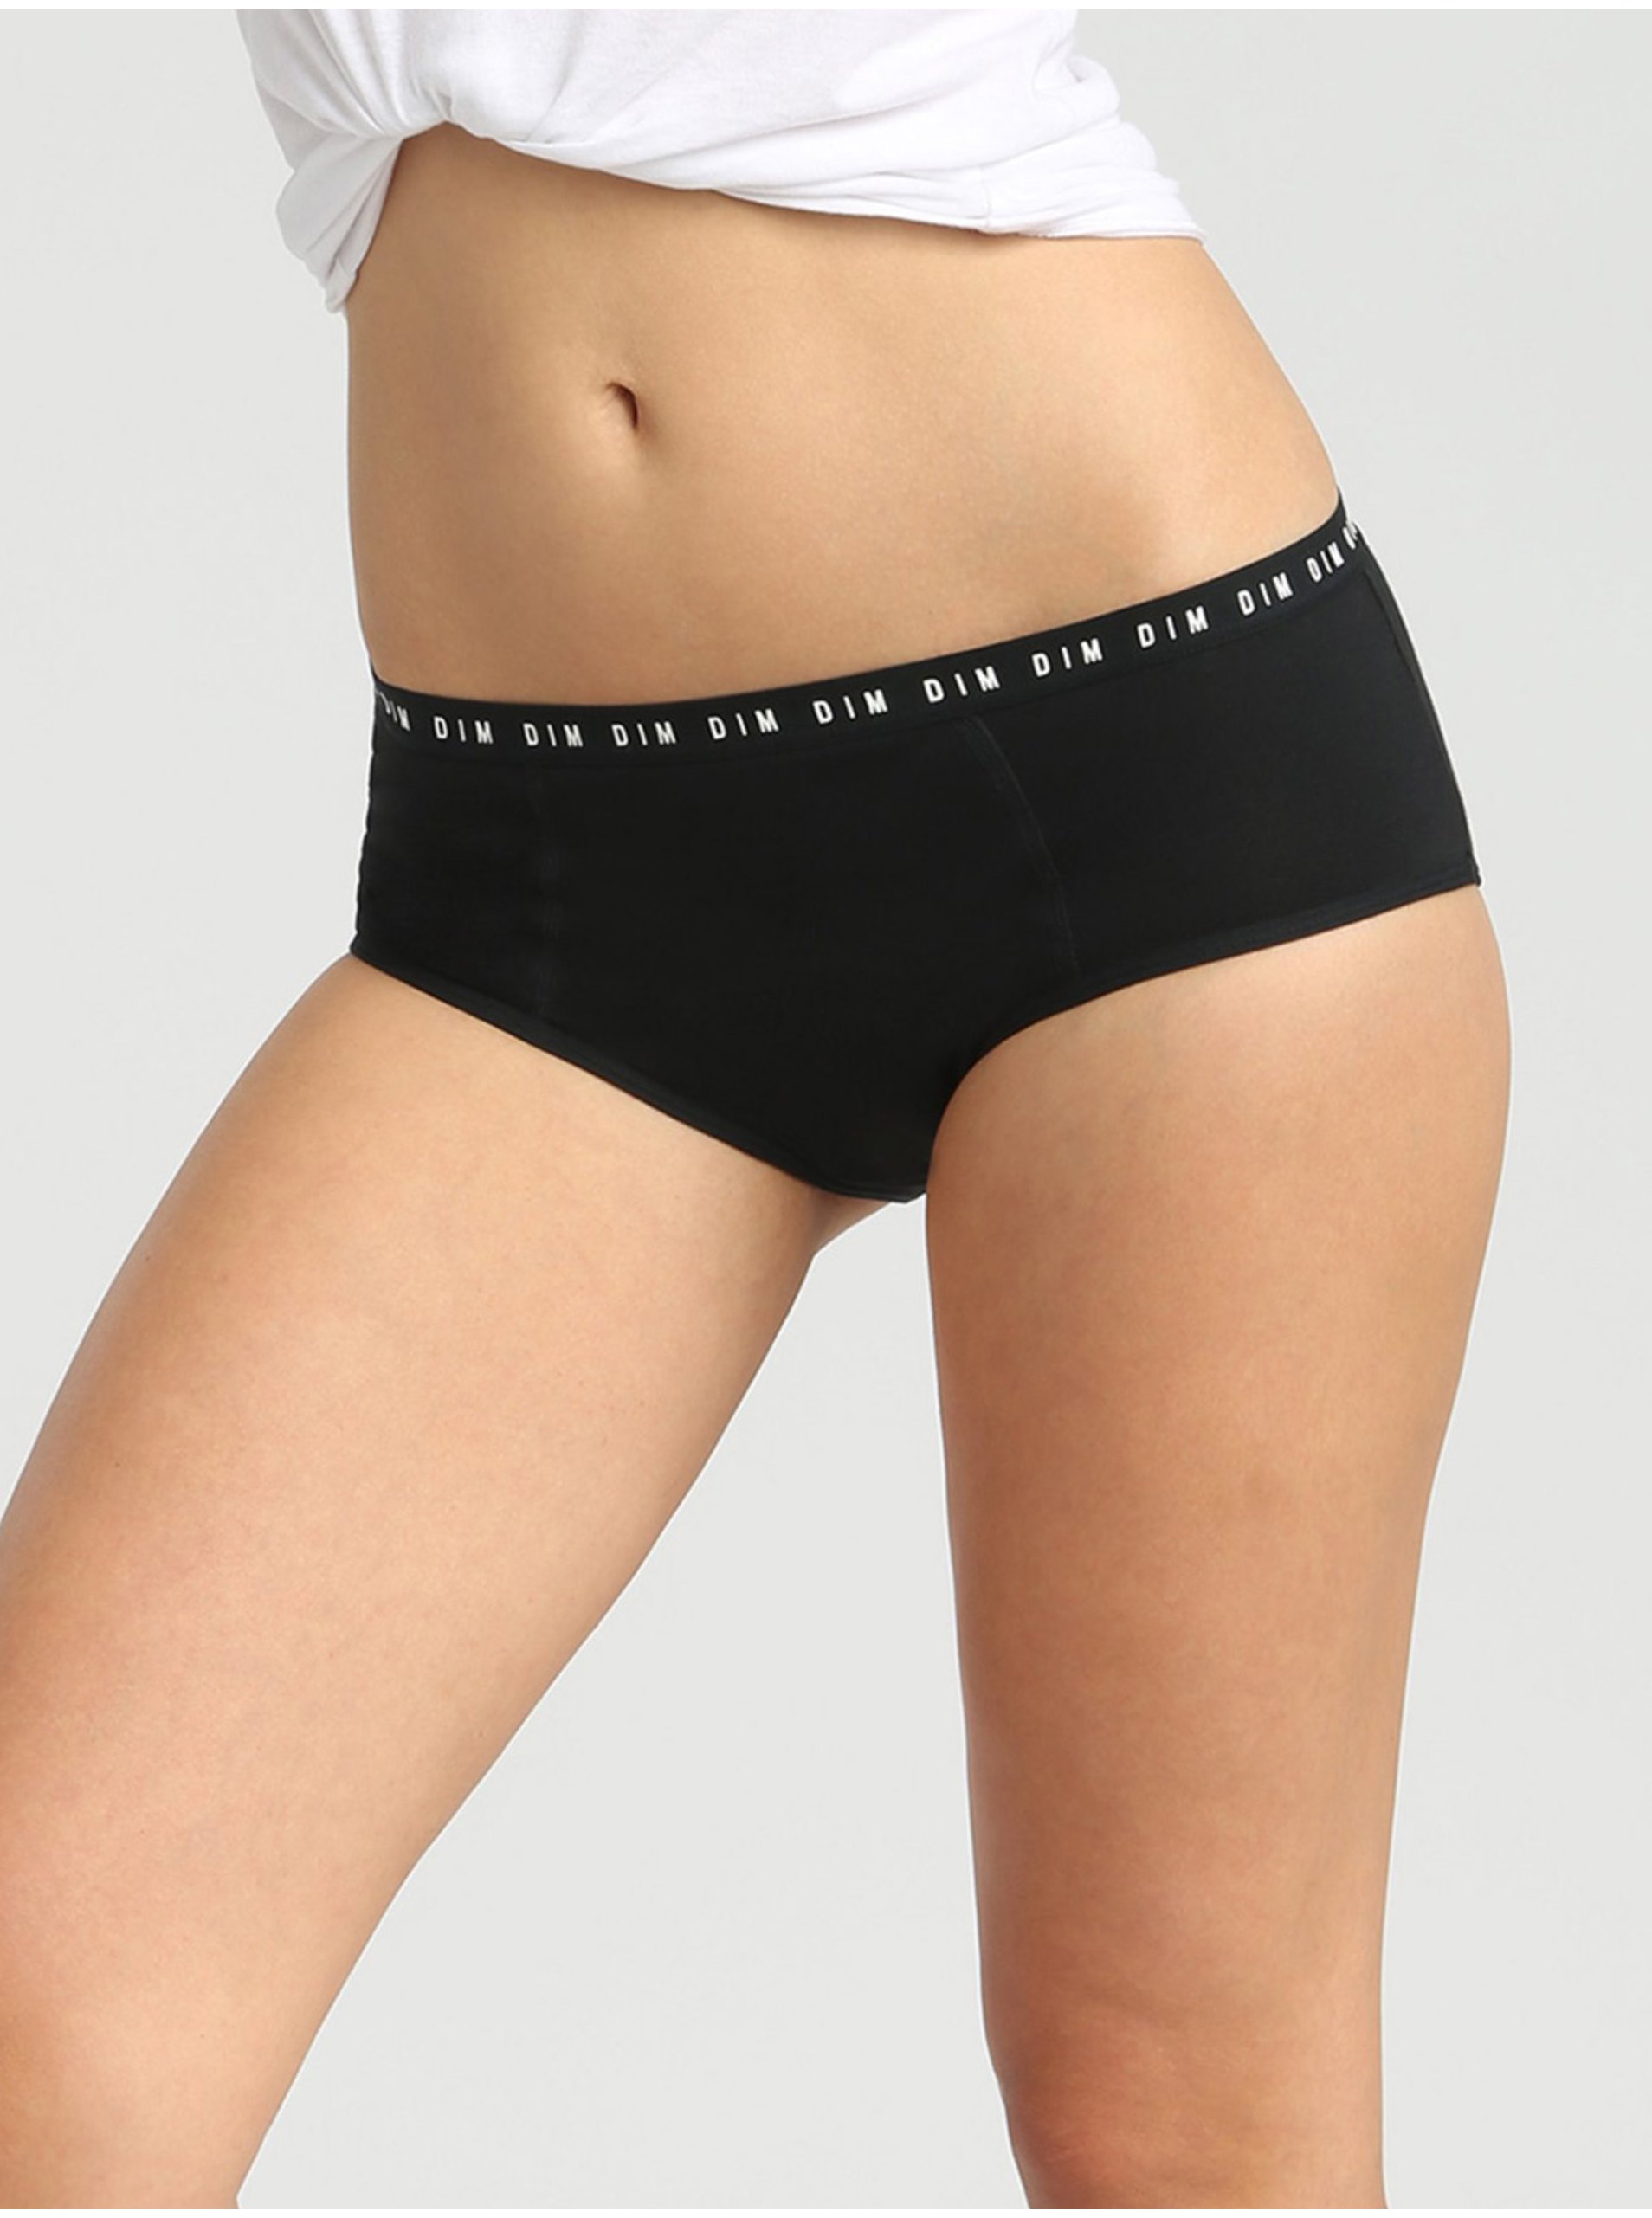 E-shop Černé dámské noční menstruační kalhotky Dim MENSTRUAL NIGHT BOXER